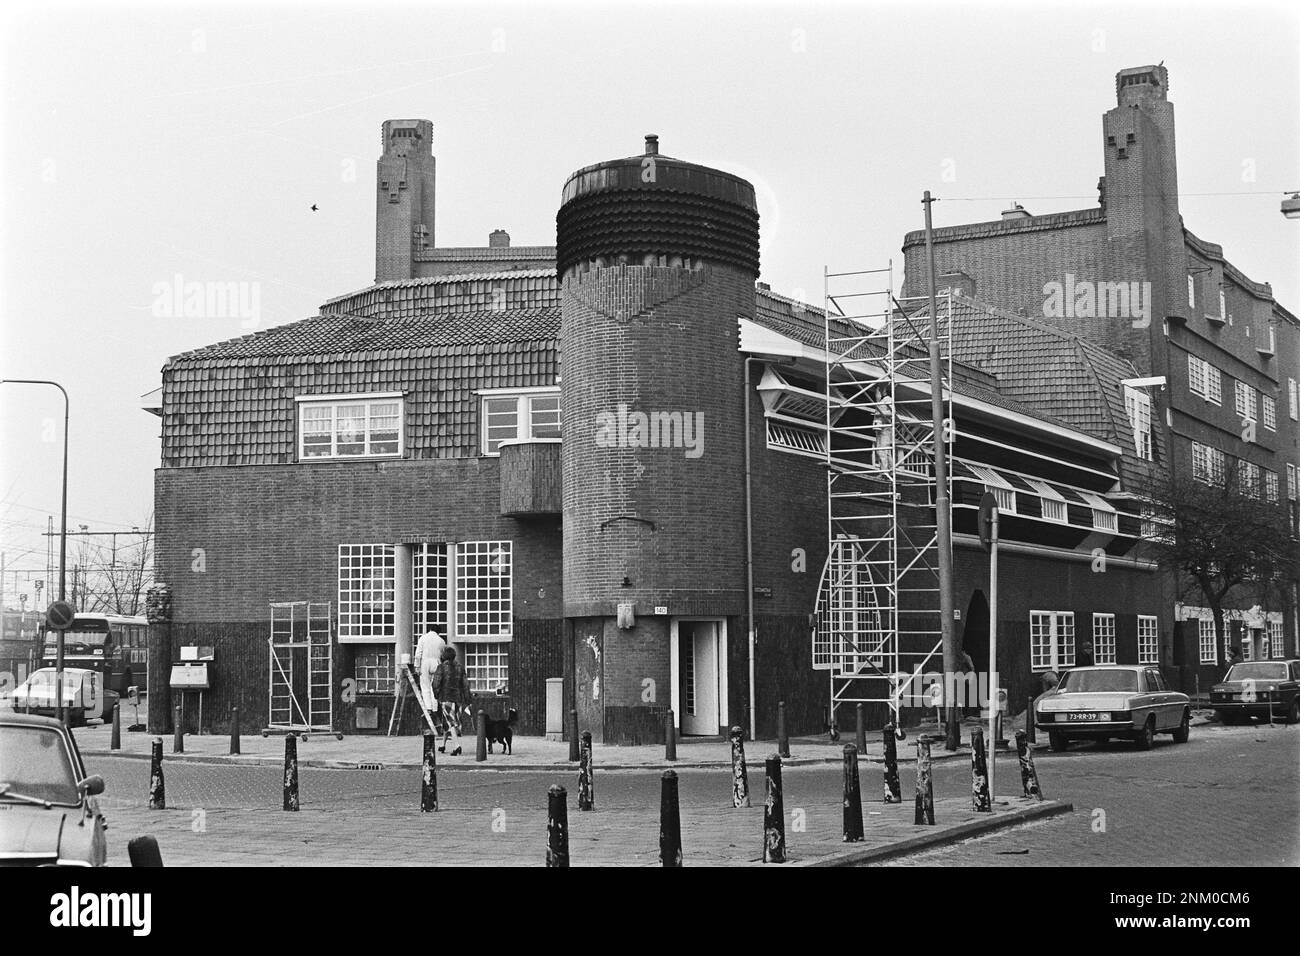 Pays-Bas Histoire: 'Het Schip' (bloc de maisons dans le quartier Spaarndammerbuurt à Amsterdam) ca. 14 février 1980 Banque D'Images